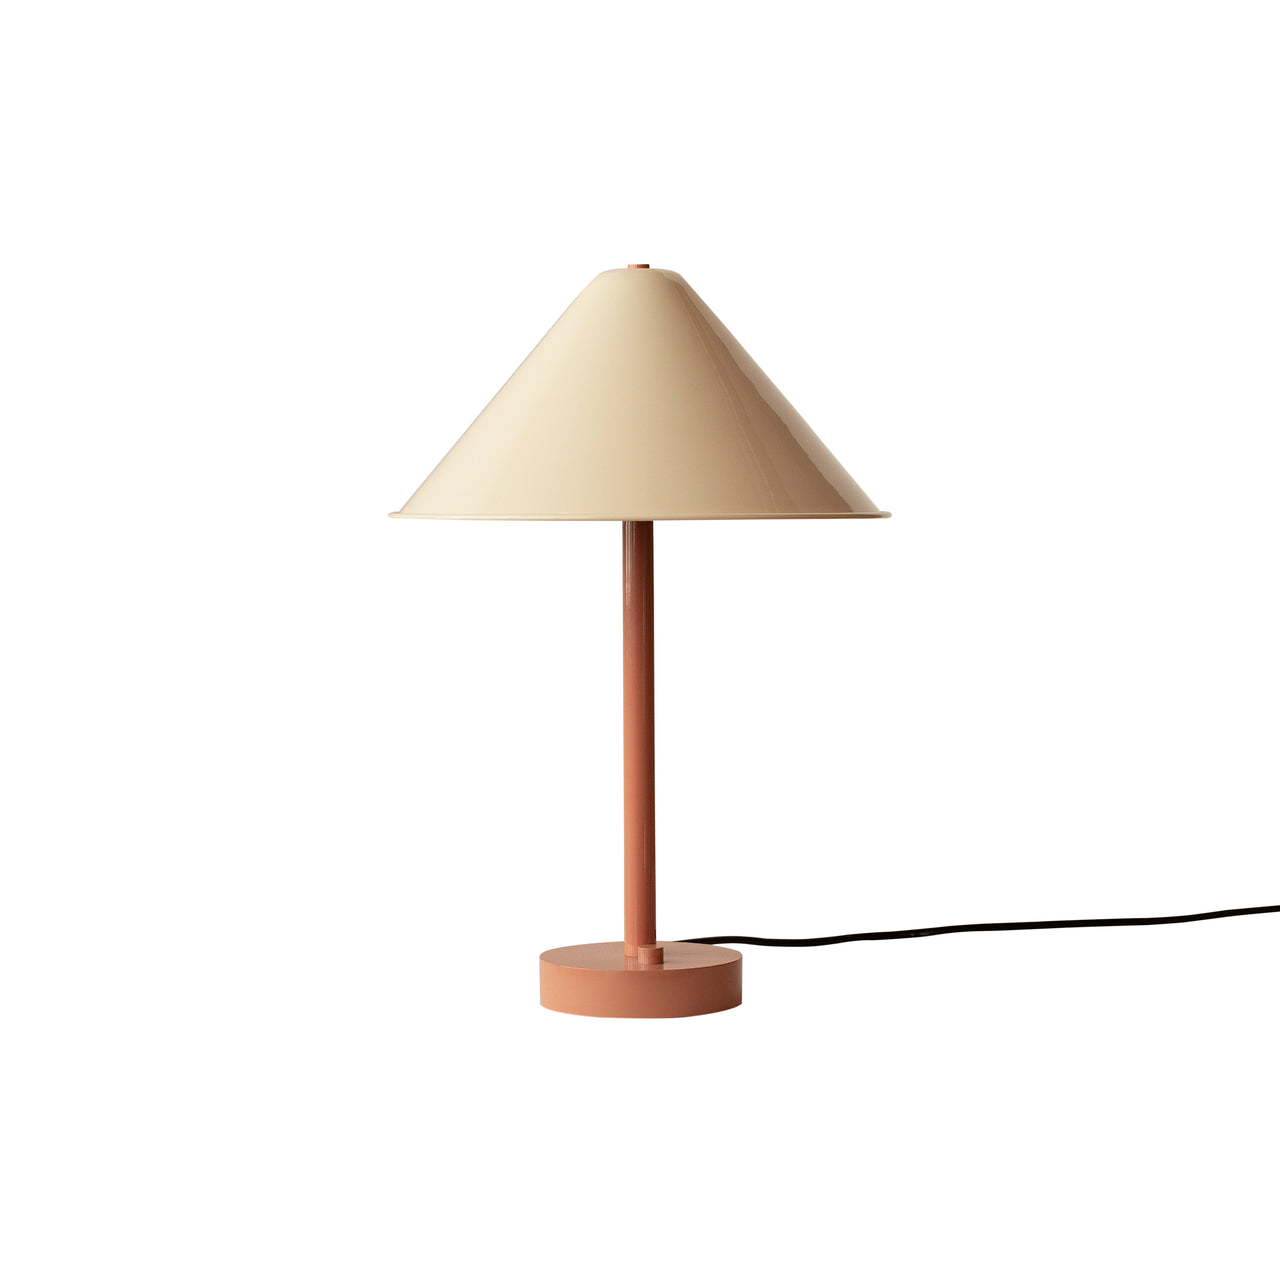 Eave Table Lamp: Bone + Peach